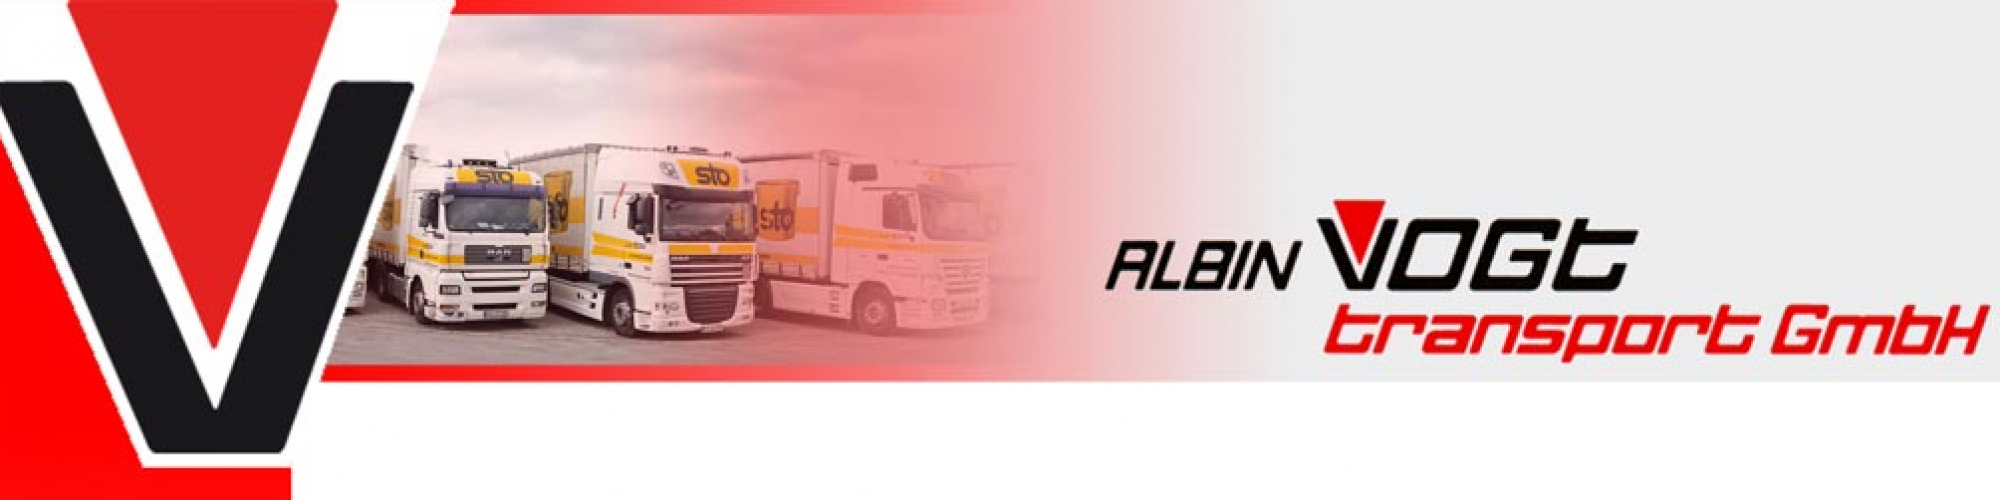 Albin Vogt Transport GmbH